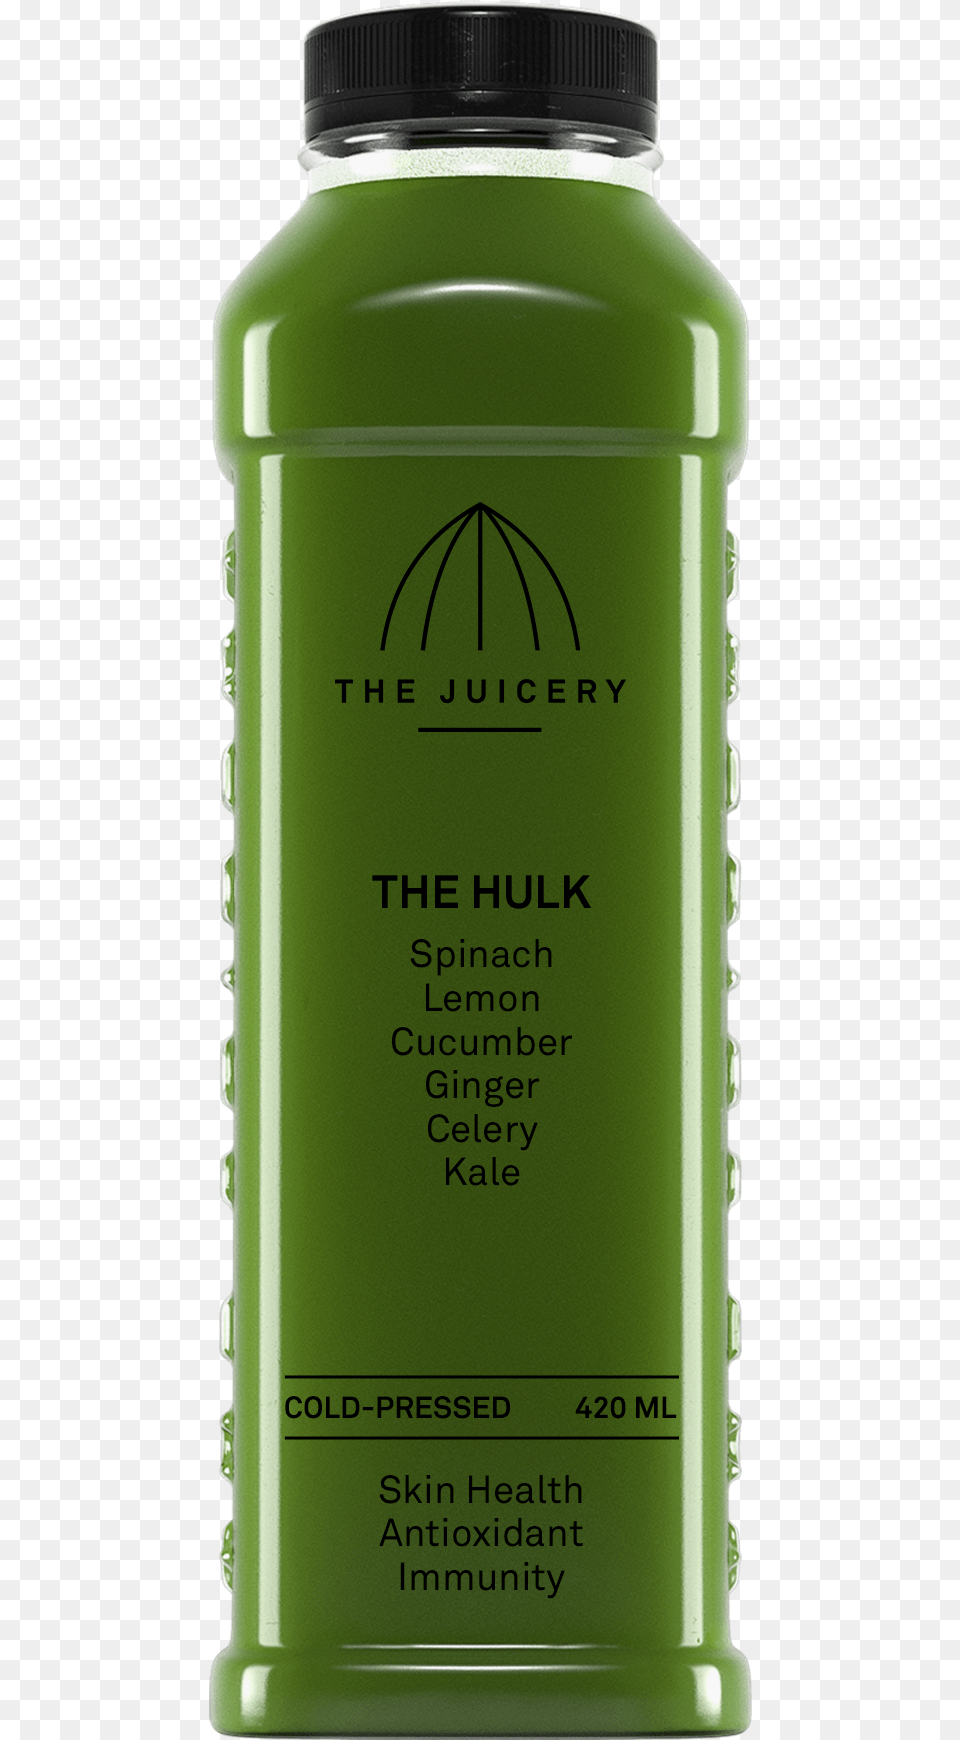 The Hulk Glass Bottle, Beverage, Juice, Shaker Free Png Download